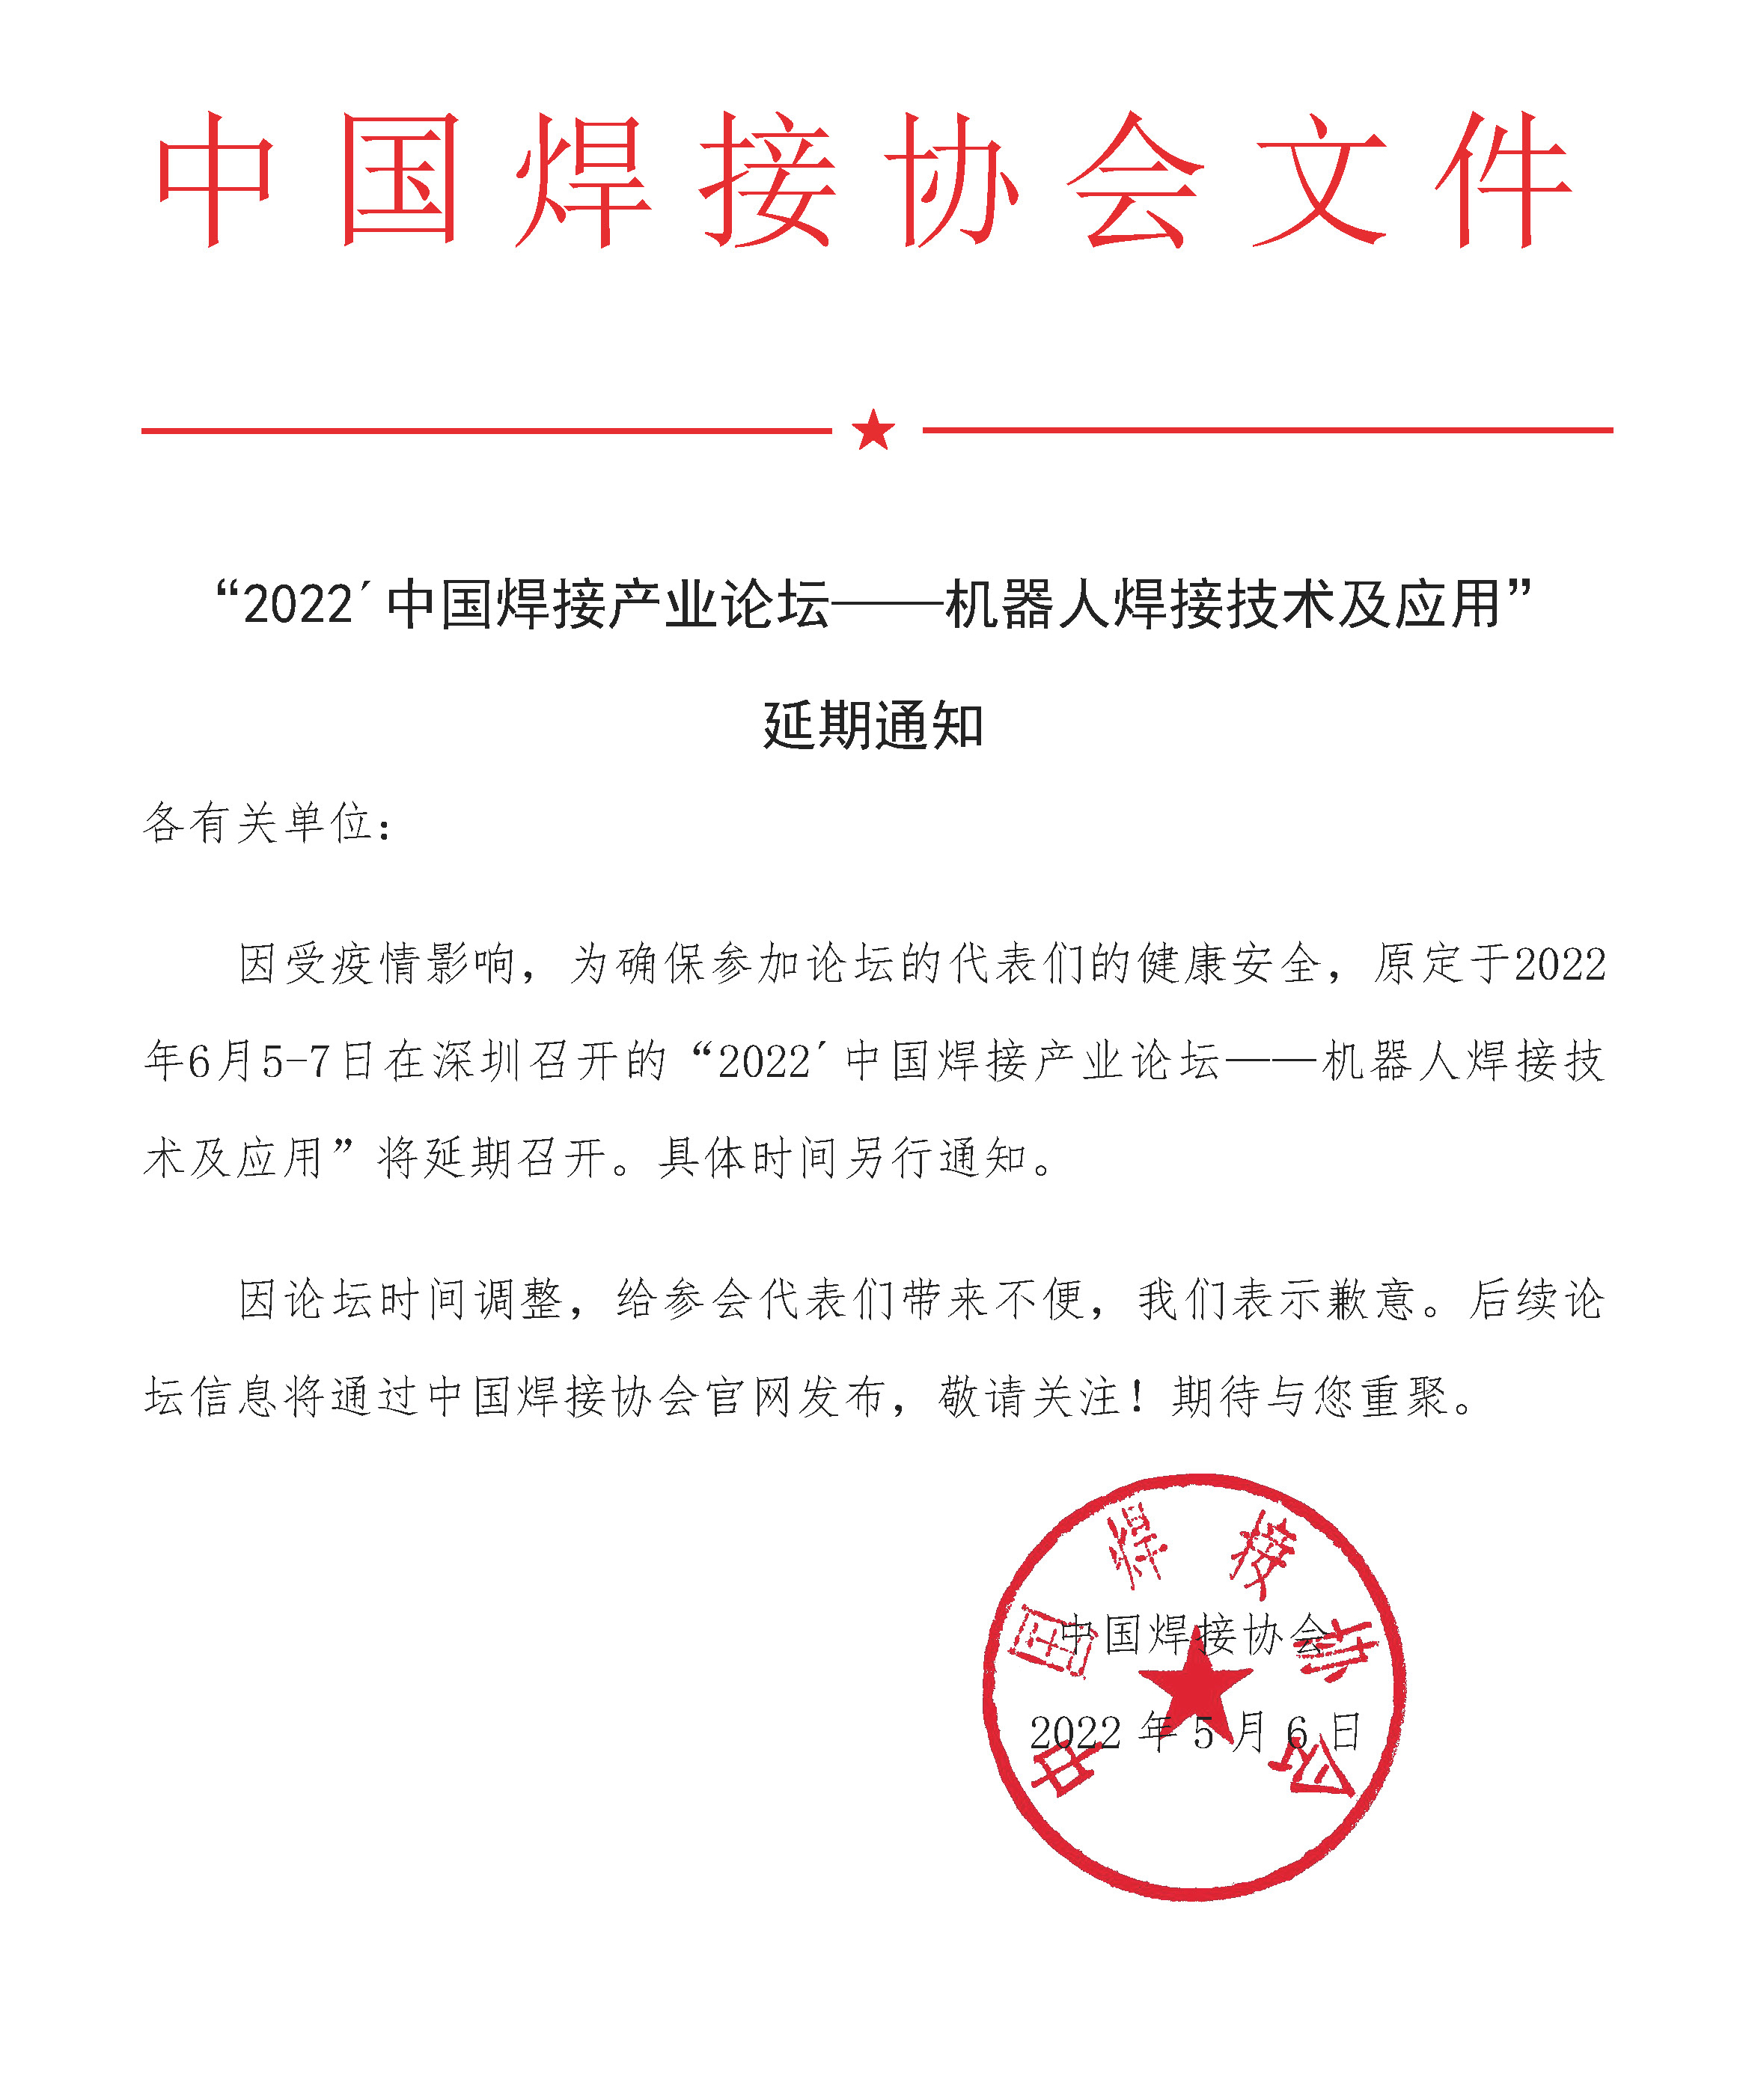 2022.5.6-“2022´中国焊接产业论坛——机器人焊接技术及应用”延期通知